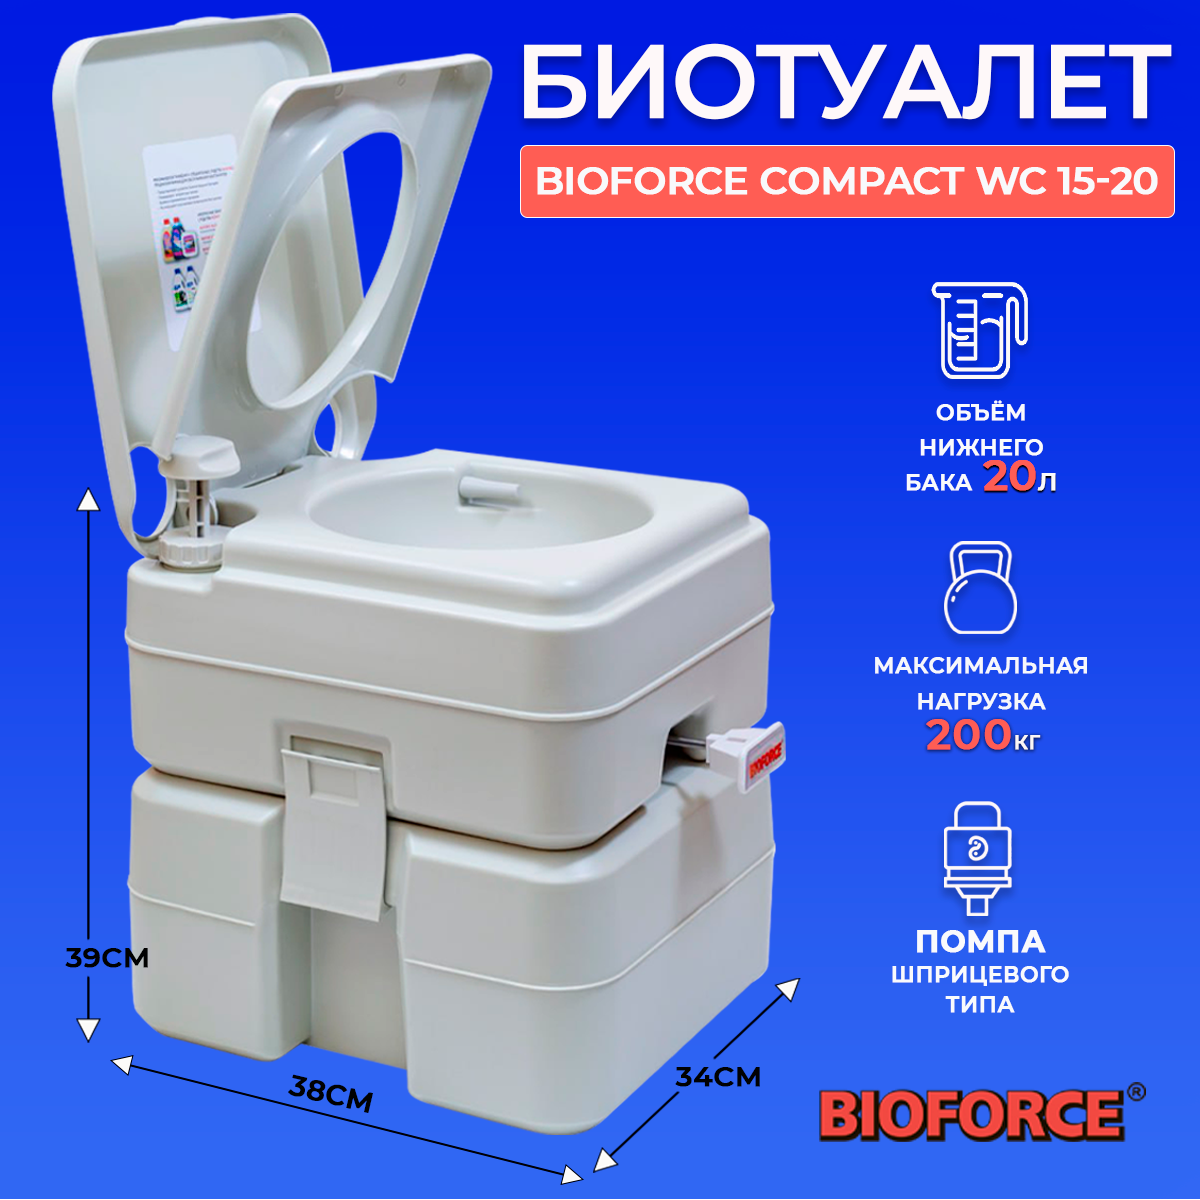 Биотуалет пластиковый BIOFORCE Compact WC 15-20VD